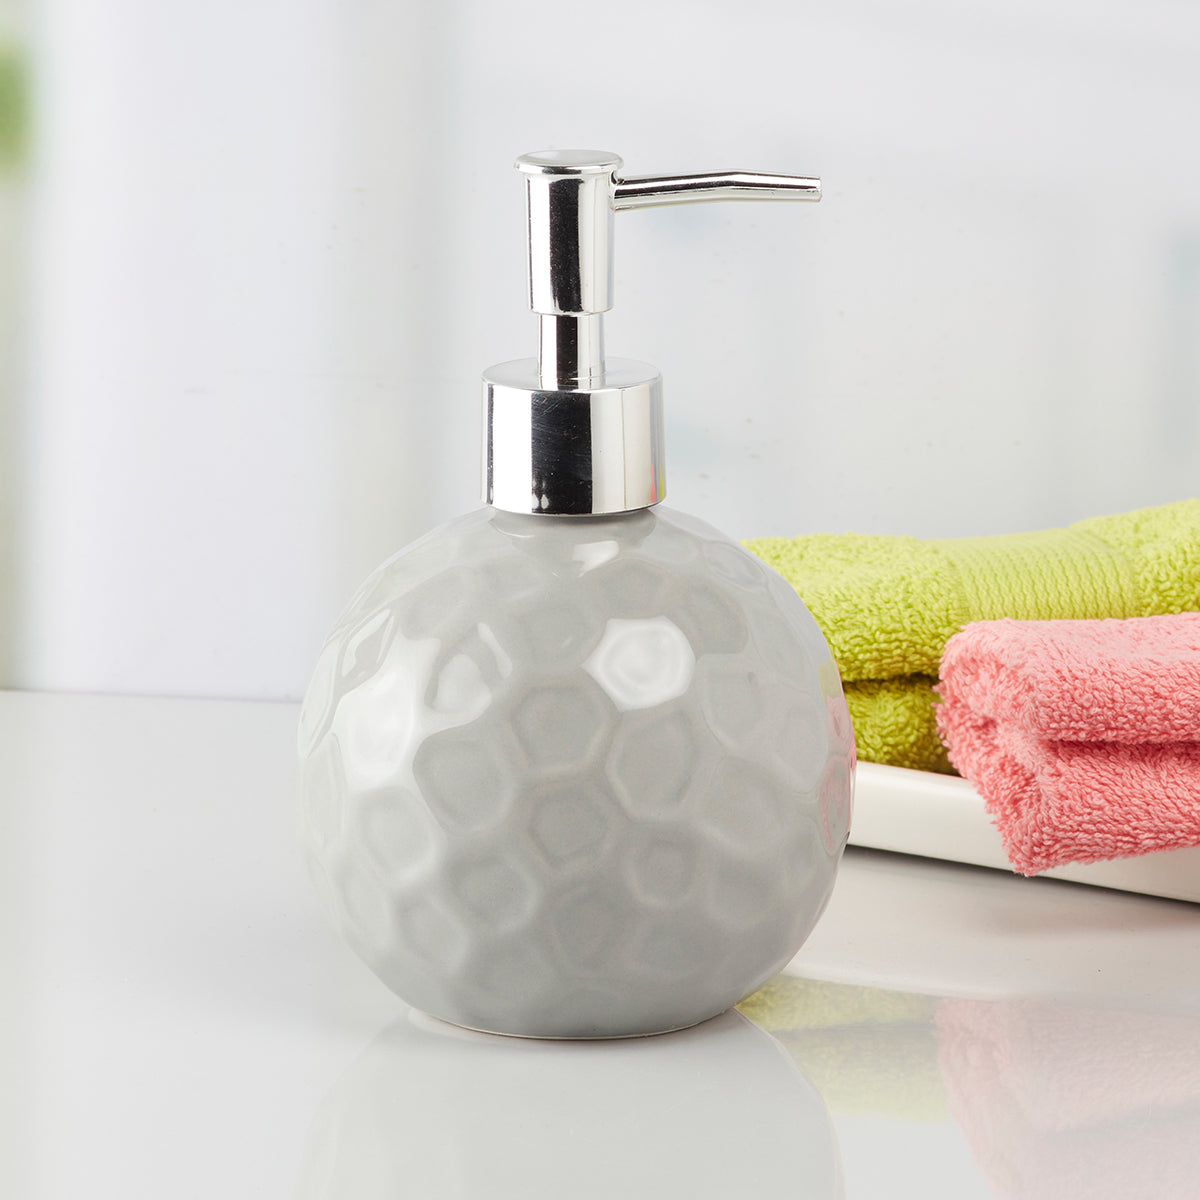 Kookee Ceramic Soap Dispenser for Bathroom handwash, refillable pump bottle for Kitchen hand wash basin, Set of 1, Grey (8009)